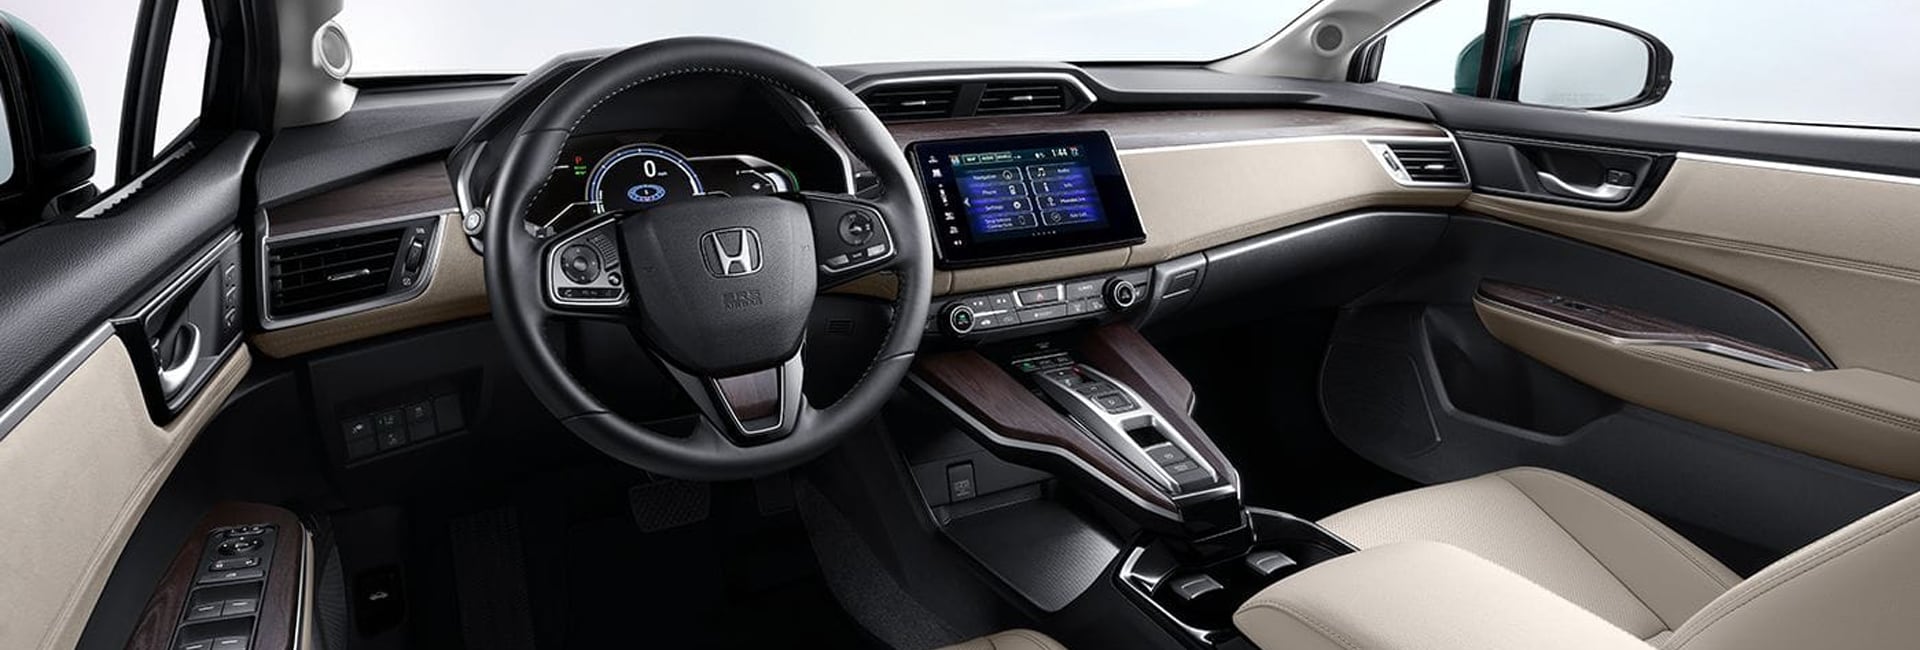 2020 Honda Clarity Interior Features